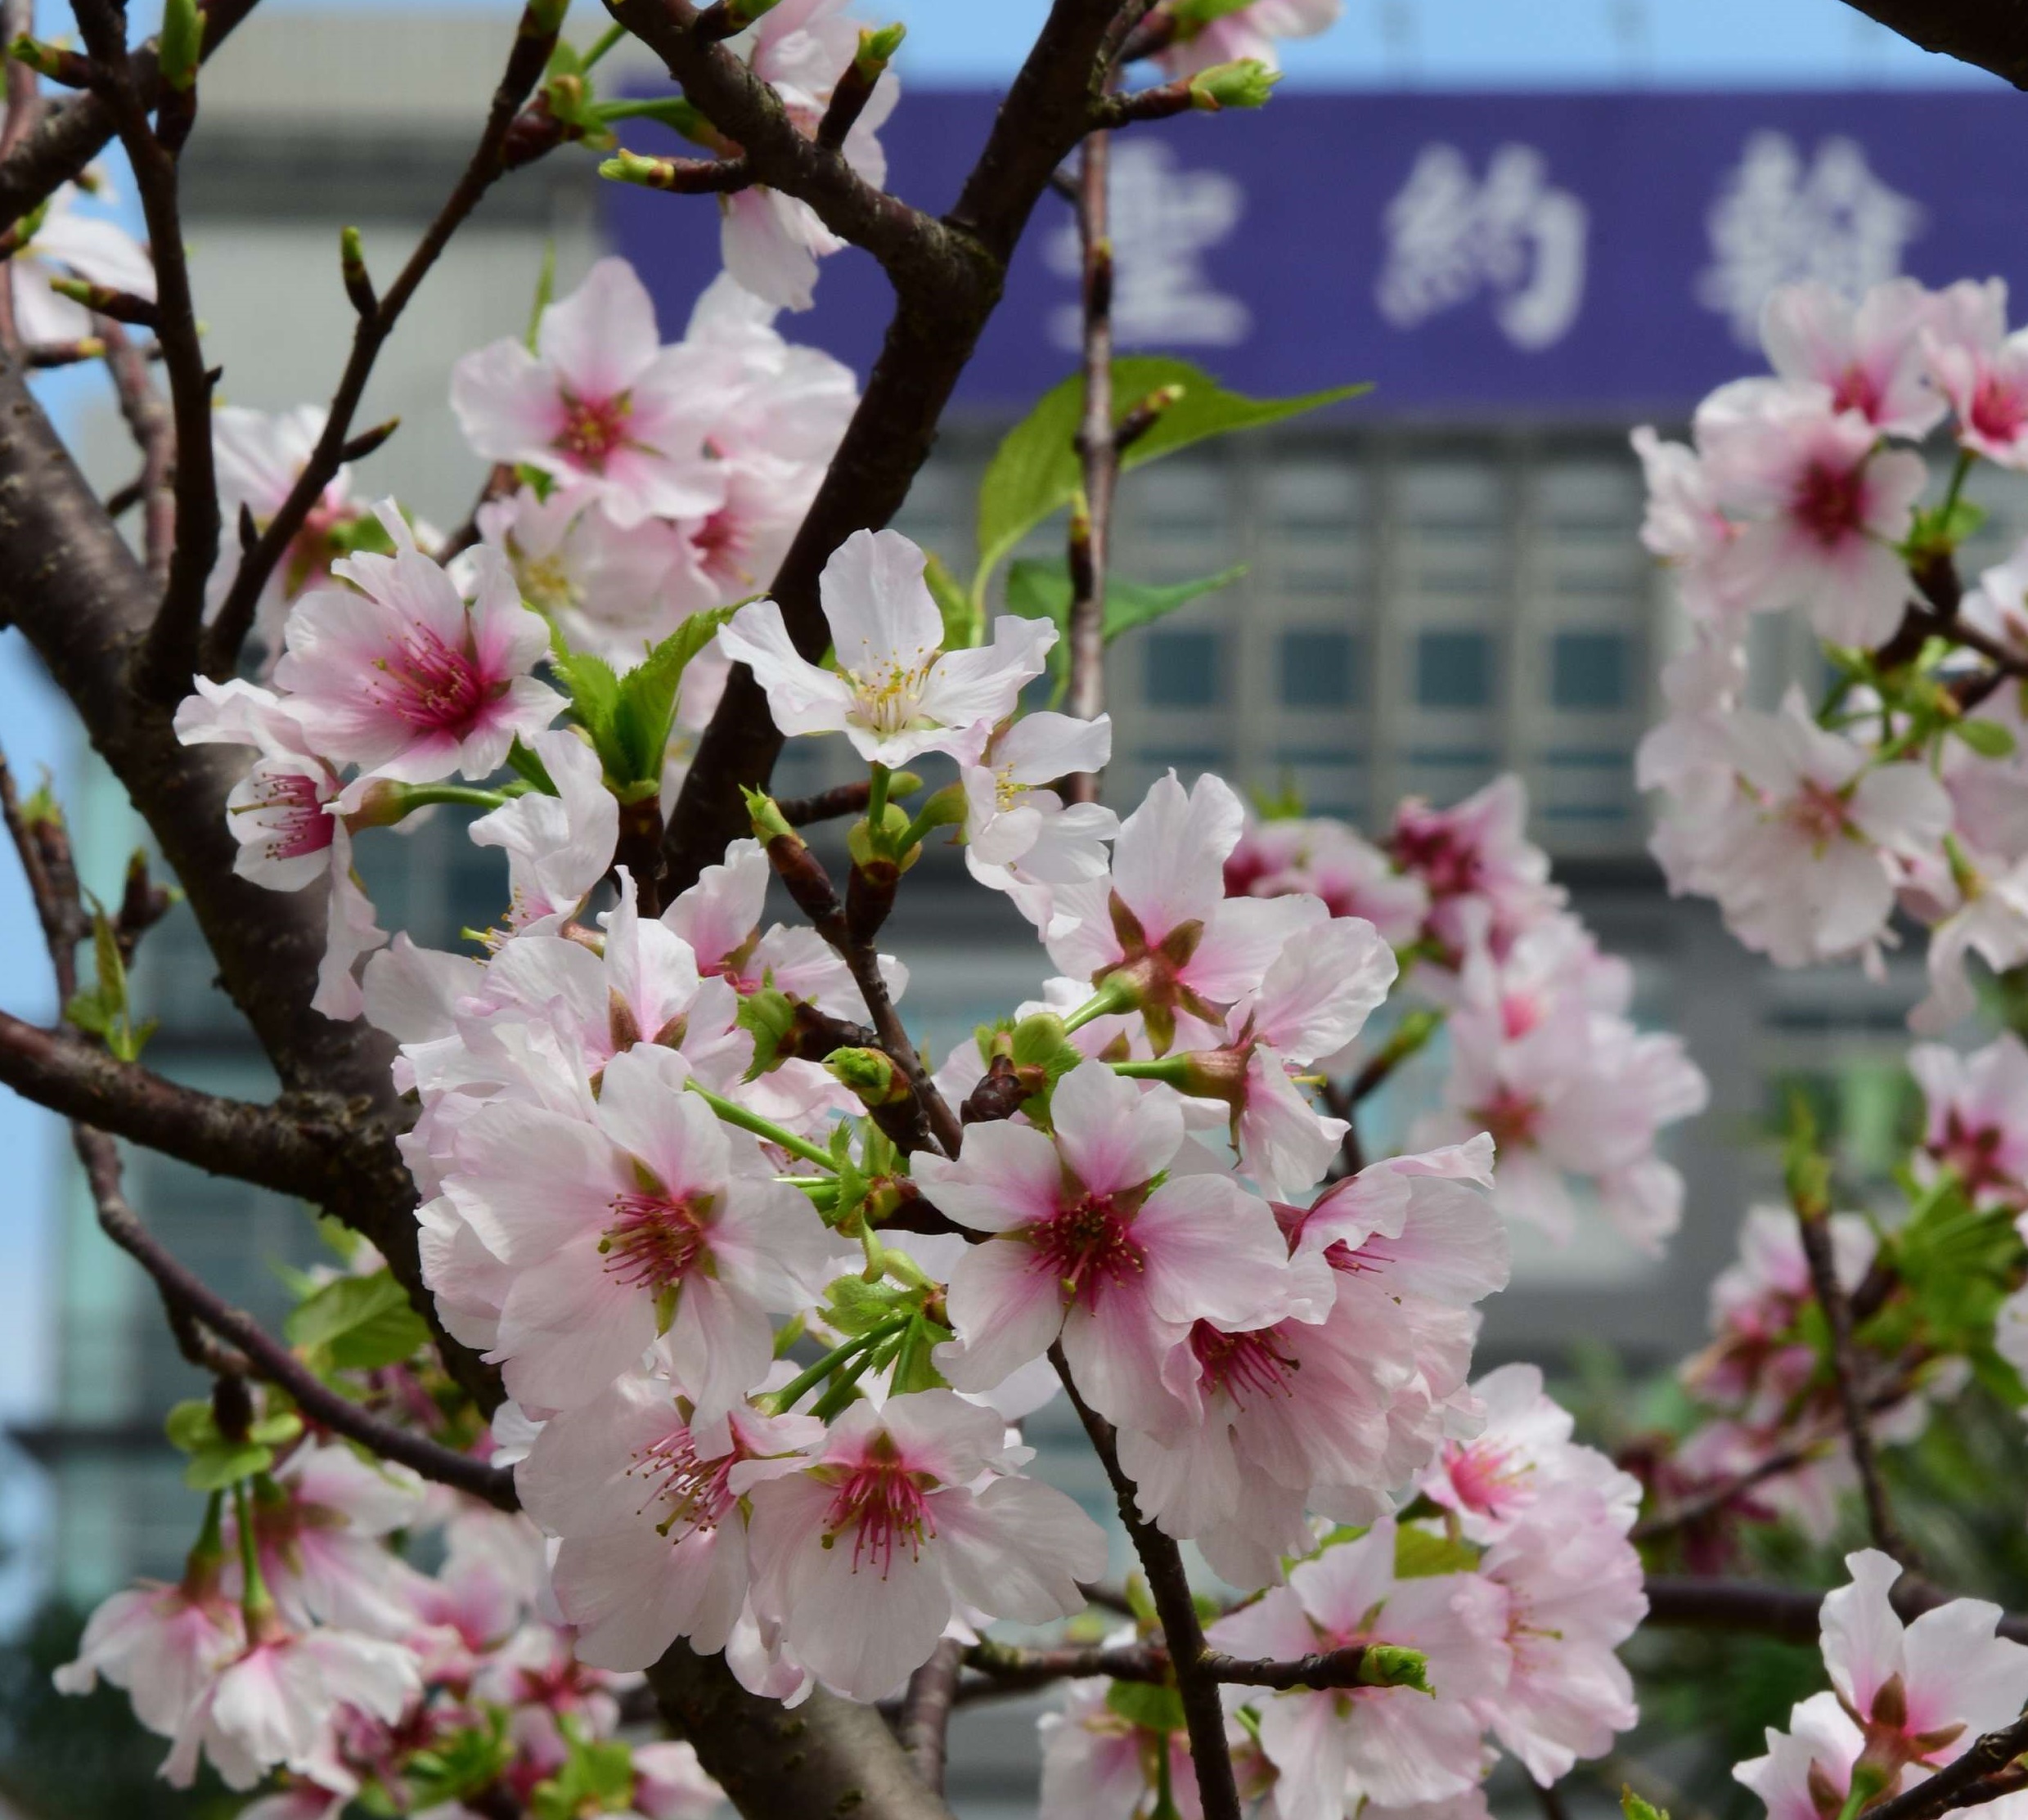 聖約大校園內四季繁花燦開，3月中旬粉嫩杜鵑花即將登場